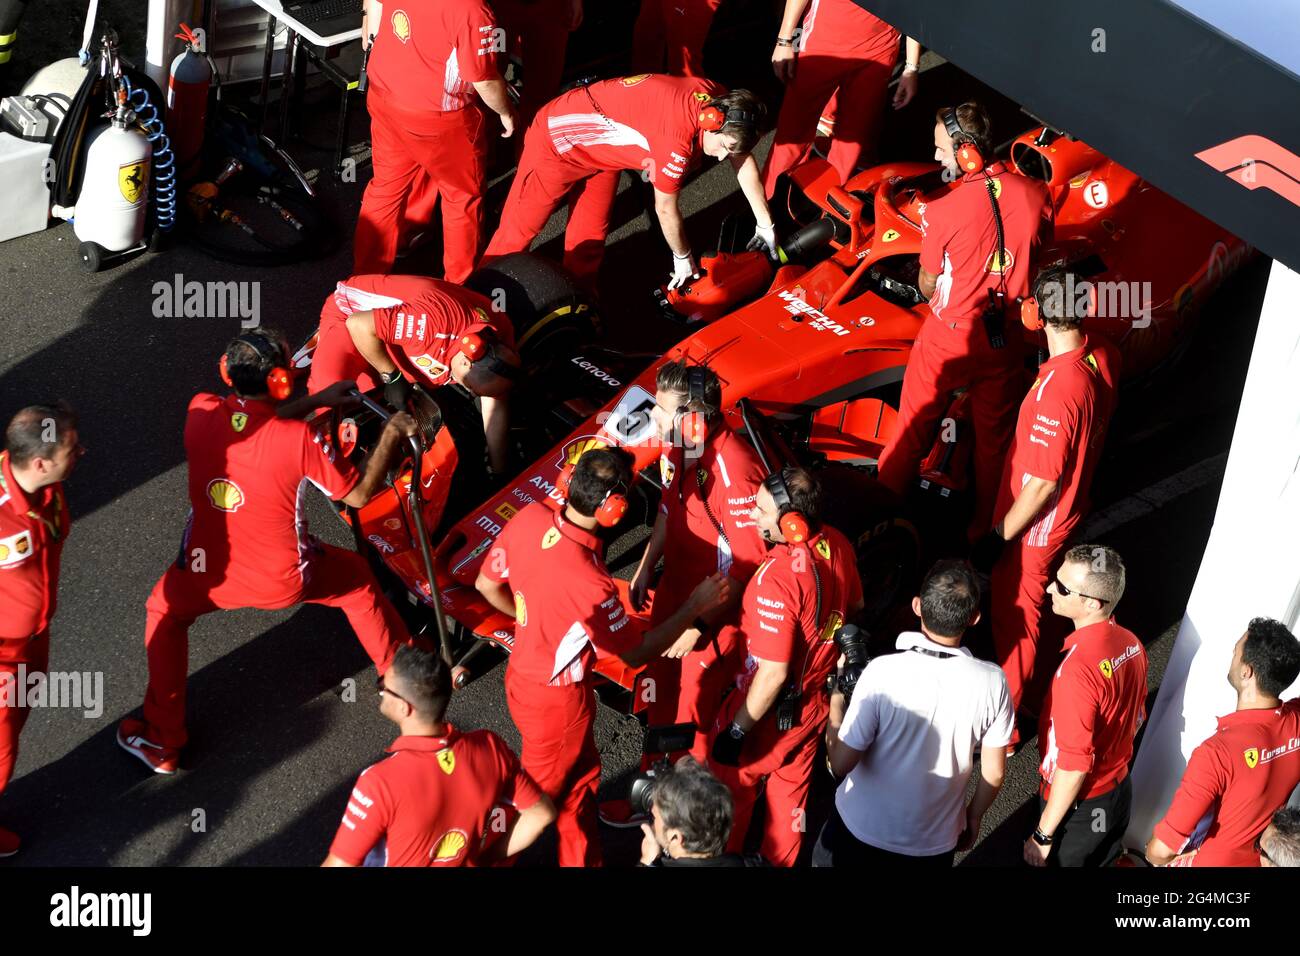 Die Boxenstoppmannschaft von Ferrari, die während einer Ausstellung in Mailand, Italien, um den Ferrari Formel 1 an der Box von Ferrari herum arbeitet. Stockfoto